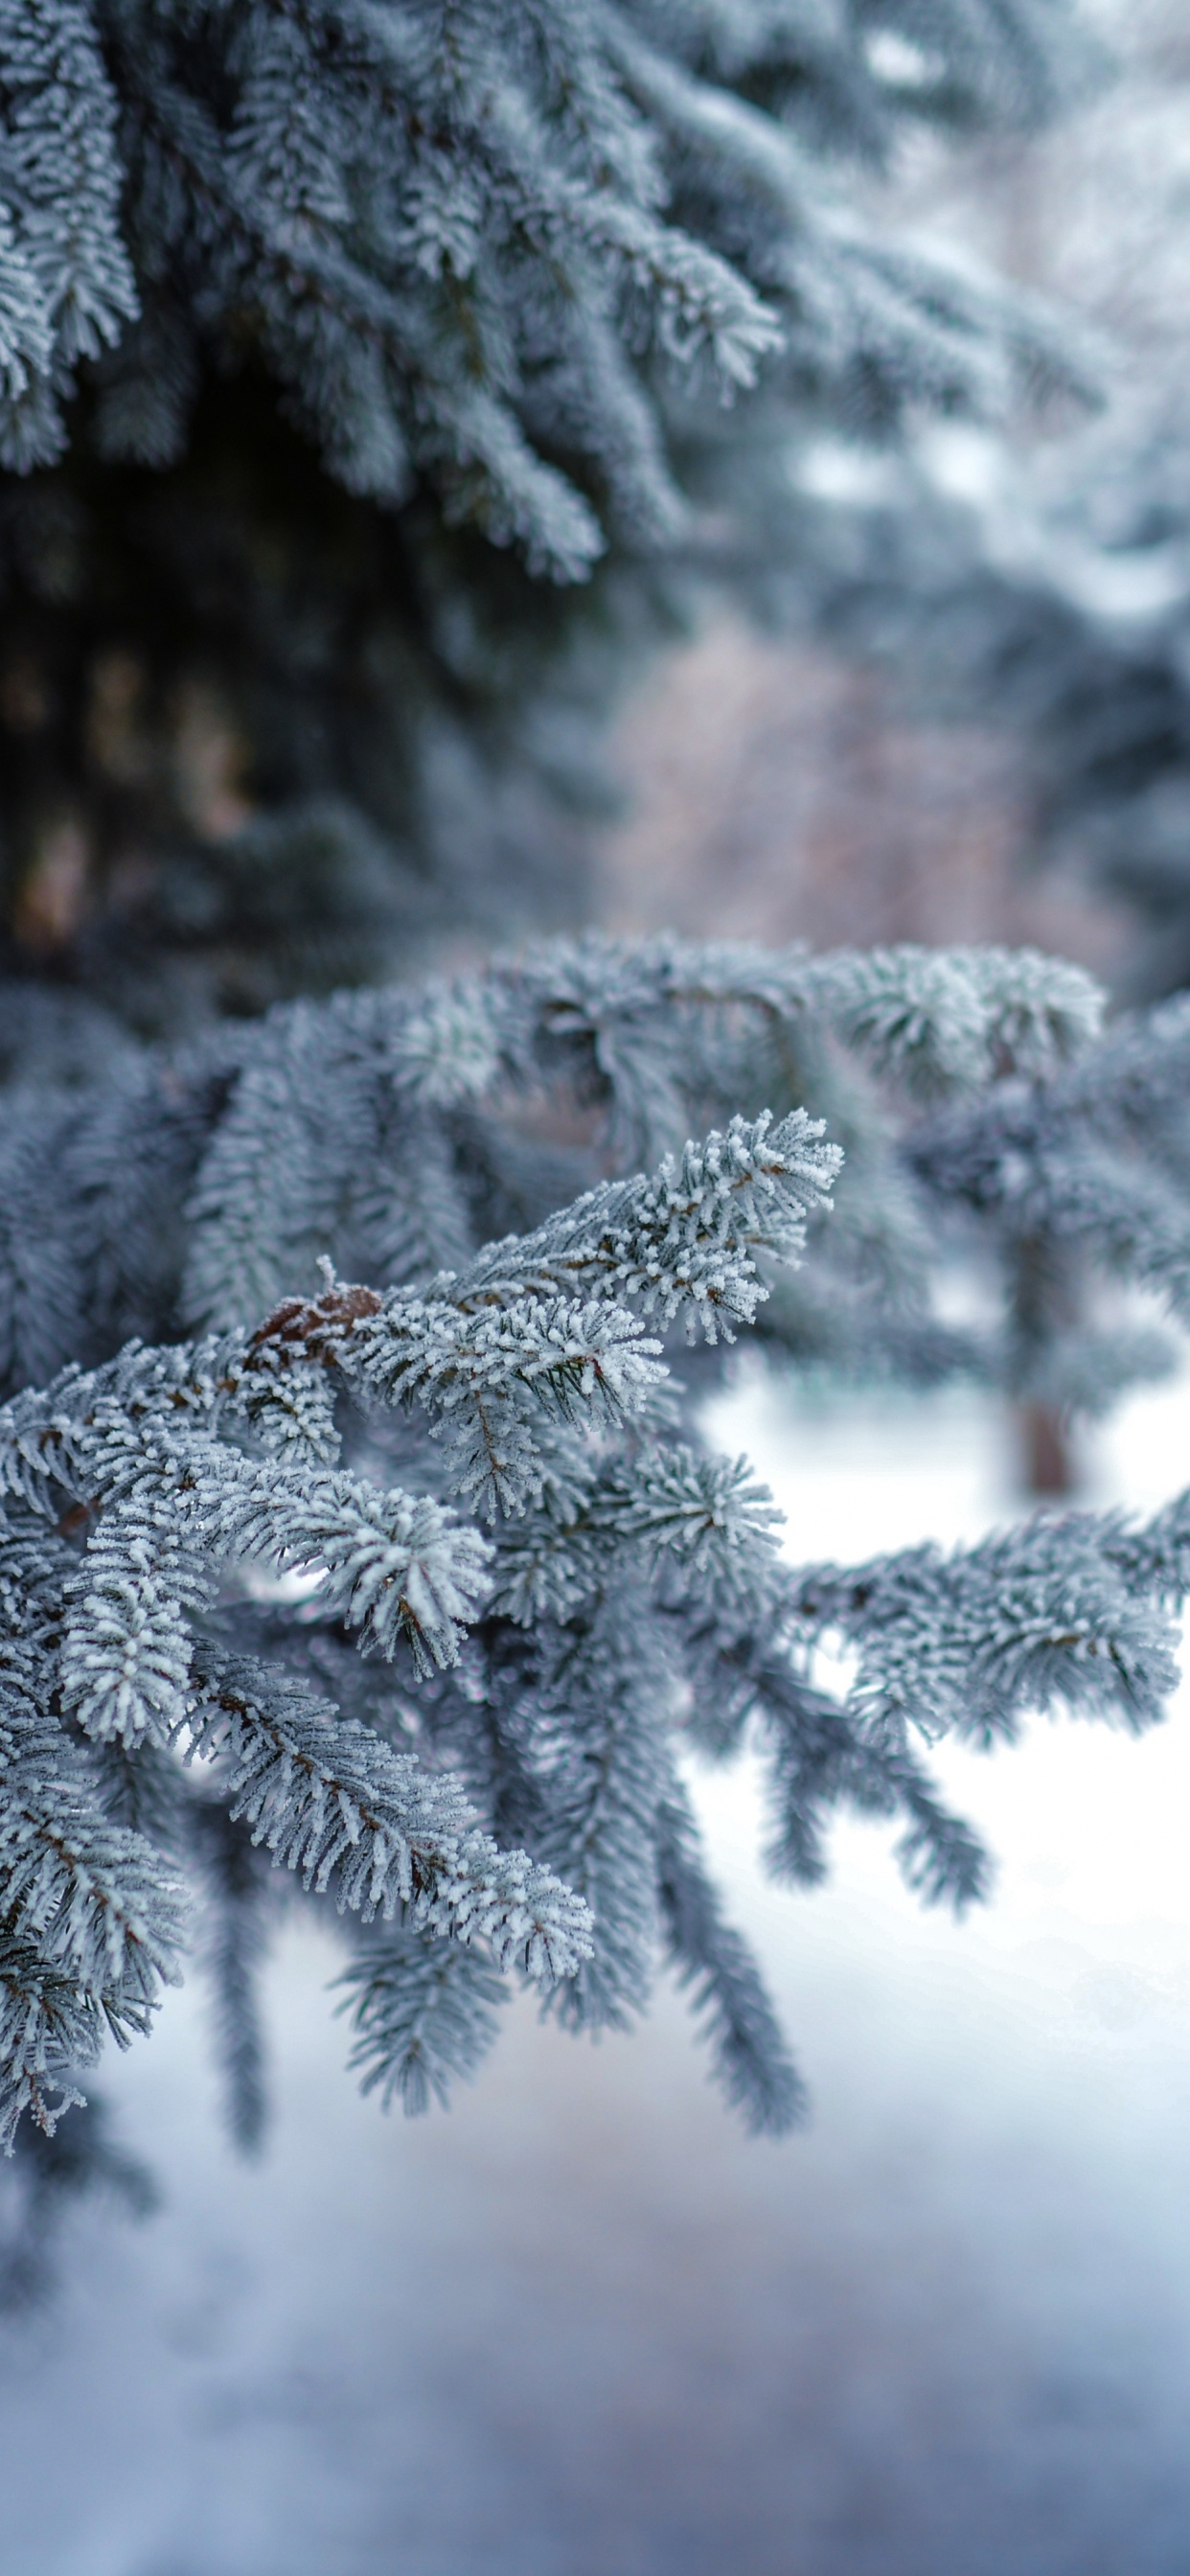 冬天, 冻结, 温带针叶林, 性质, 木本植物 壁纸 1242x2688 允许